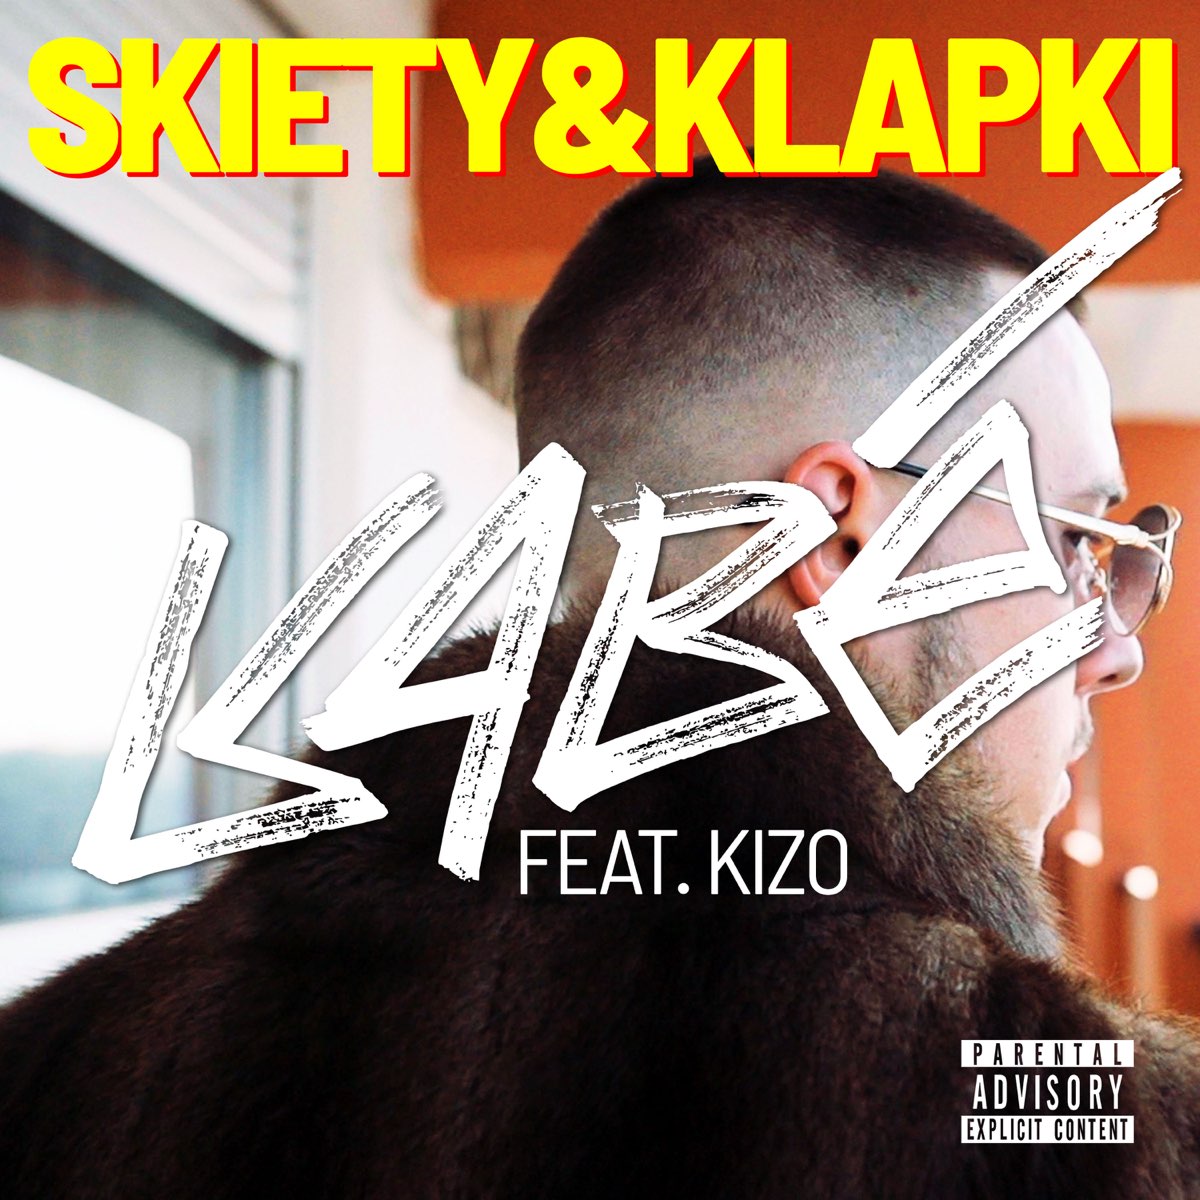 Skiety & Klapki (Remix) [feat. Kizo] - Single by Kabe & Kizo on Apple Music